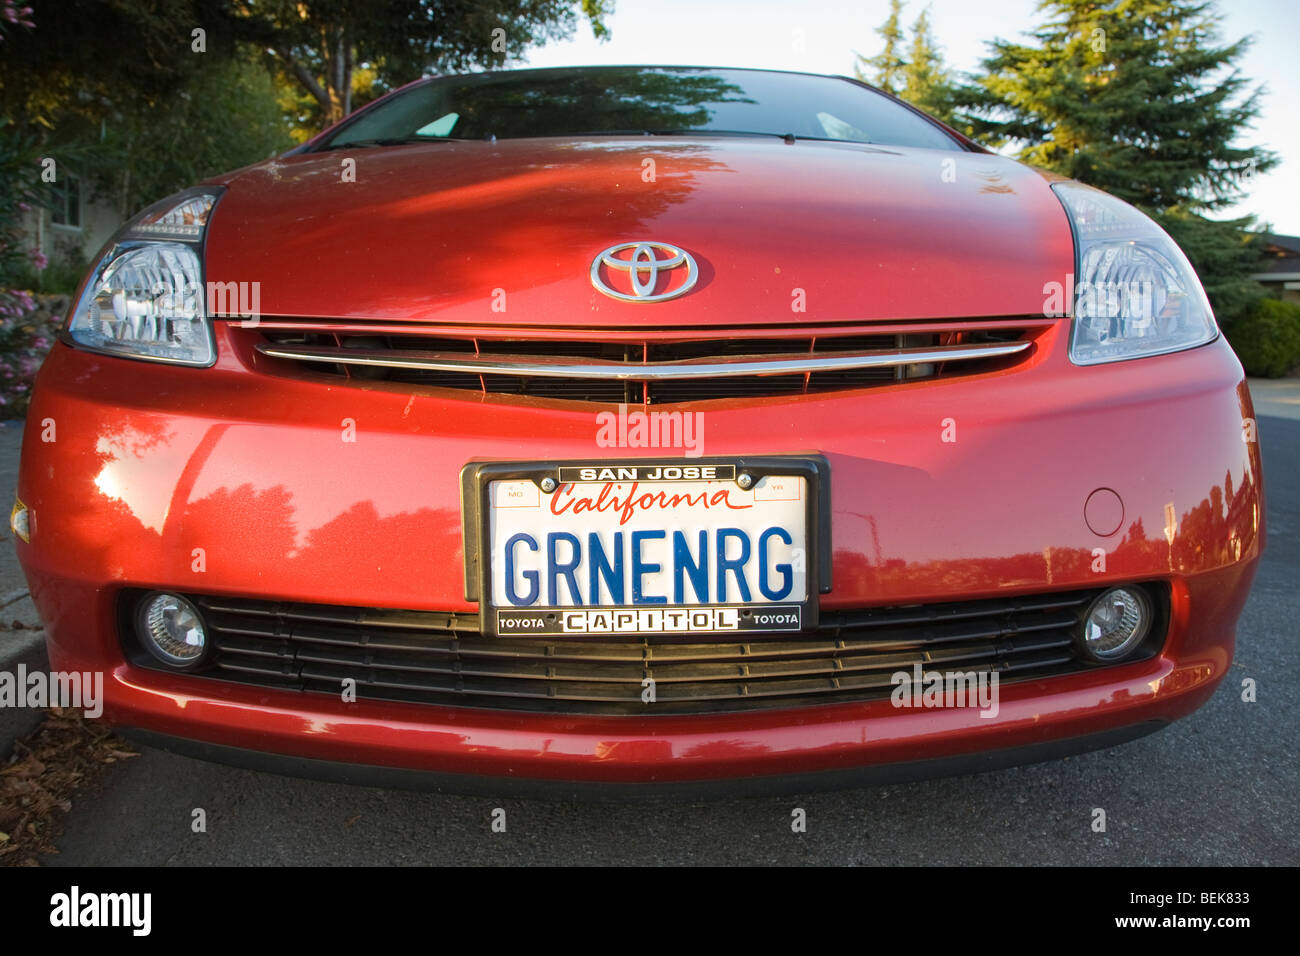 Vorderansicht des Toyota Prius mit einem Kennzeichen "GRNENRG" (Green Energy). Mountain View, Kalifornien, USA Stockfoto